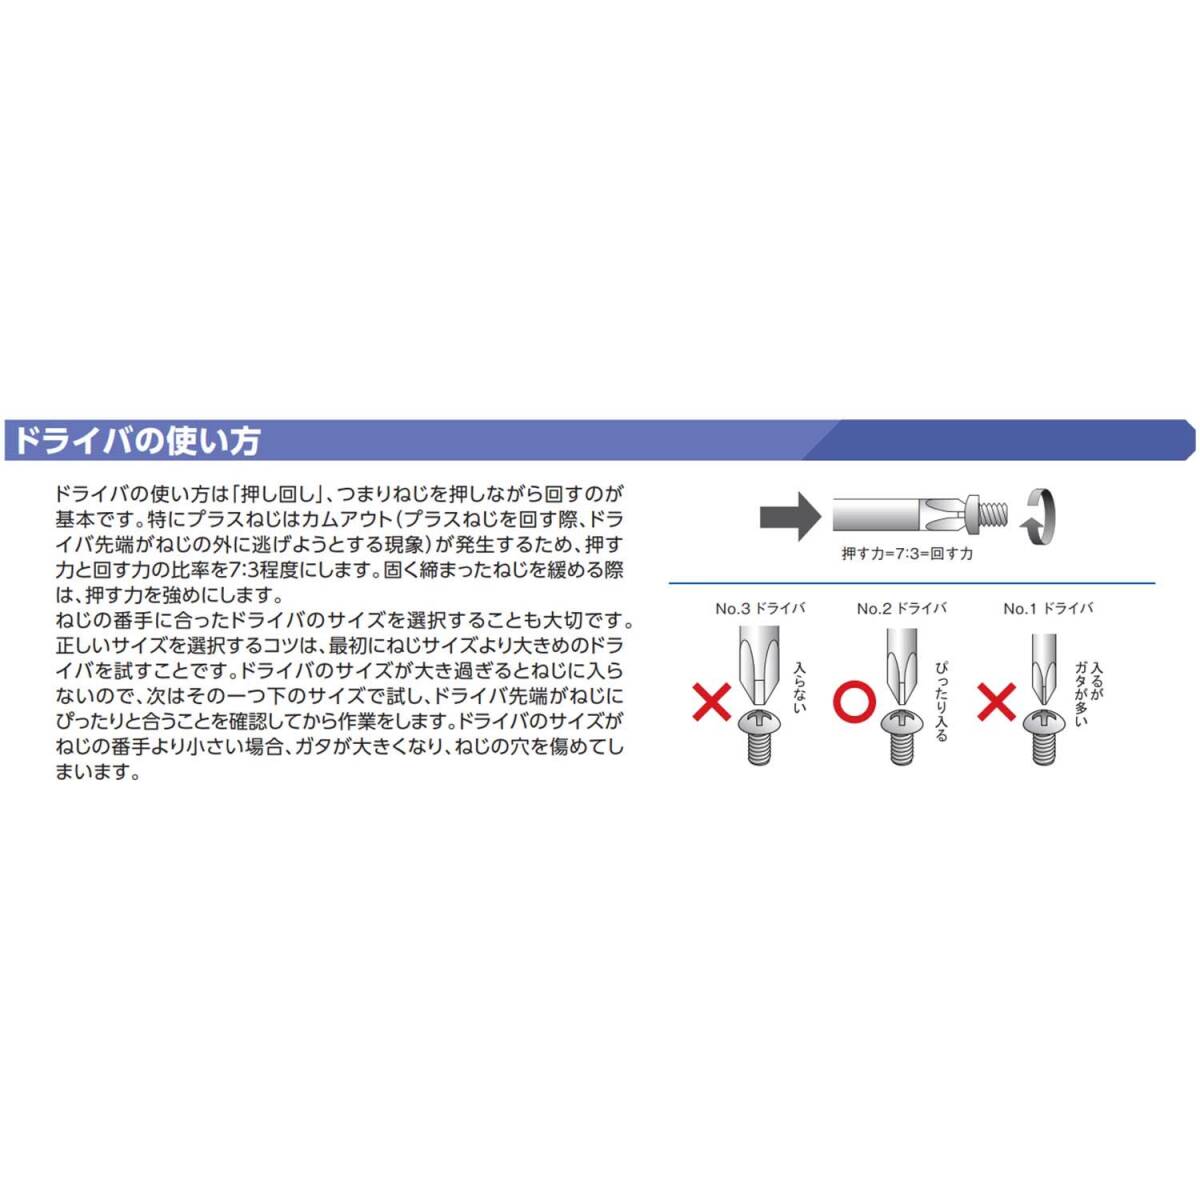 【特価商品】京都機械工具(KTC) ソフトドライバー クロス No.2 D7P215_画像5